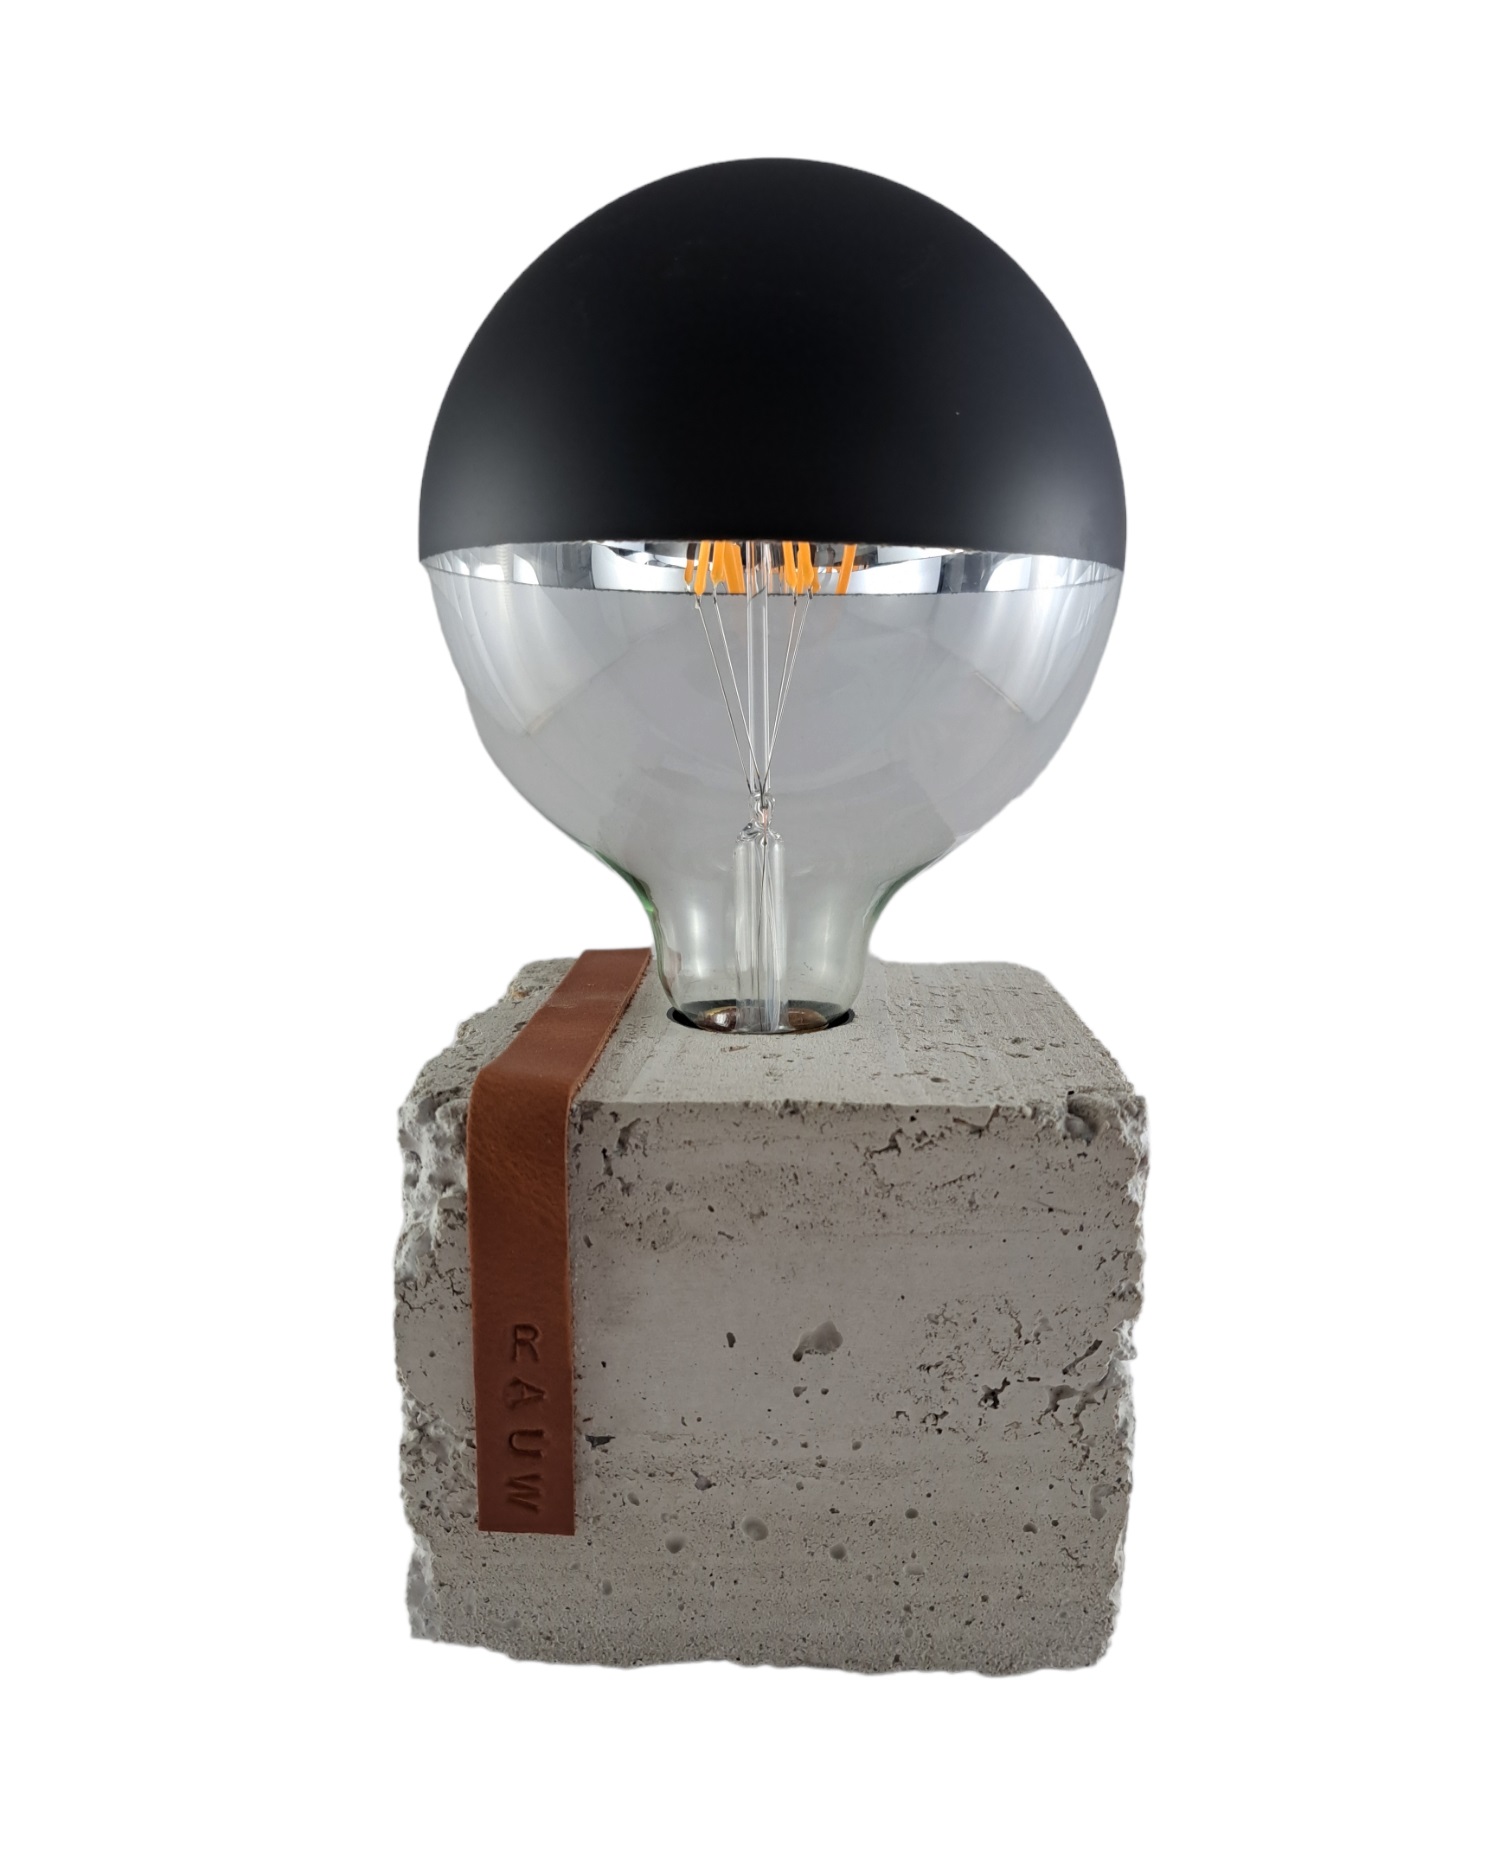 Ausgefallene Tischlampe Beton Grau Braun Lederband Zement Lampe